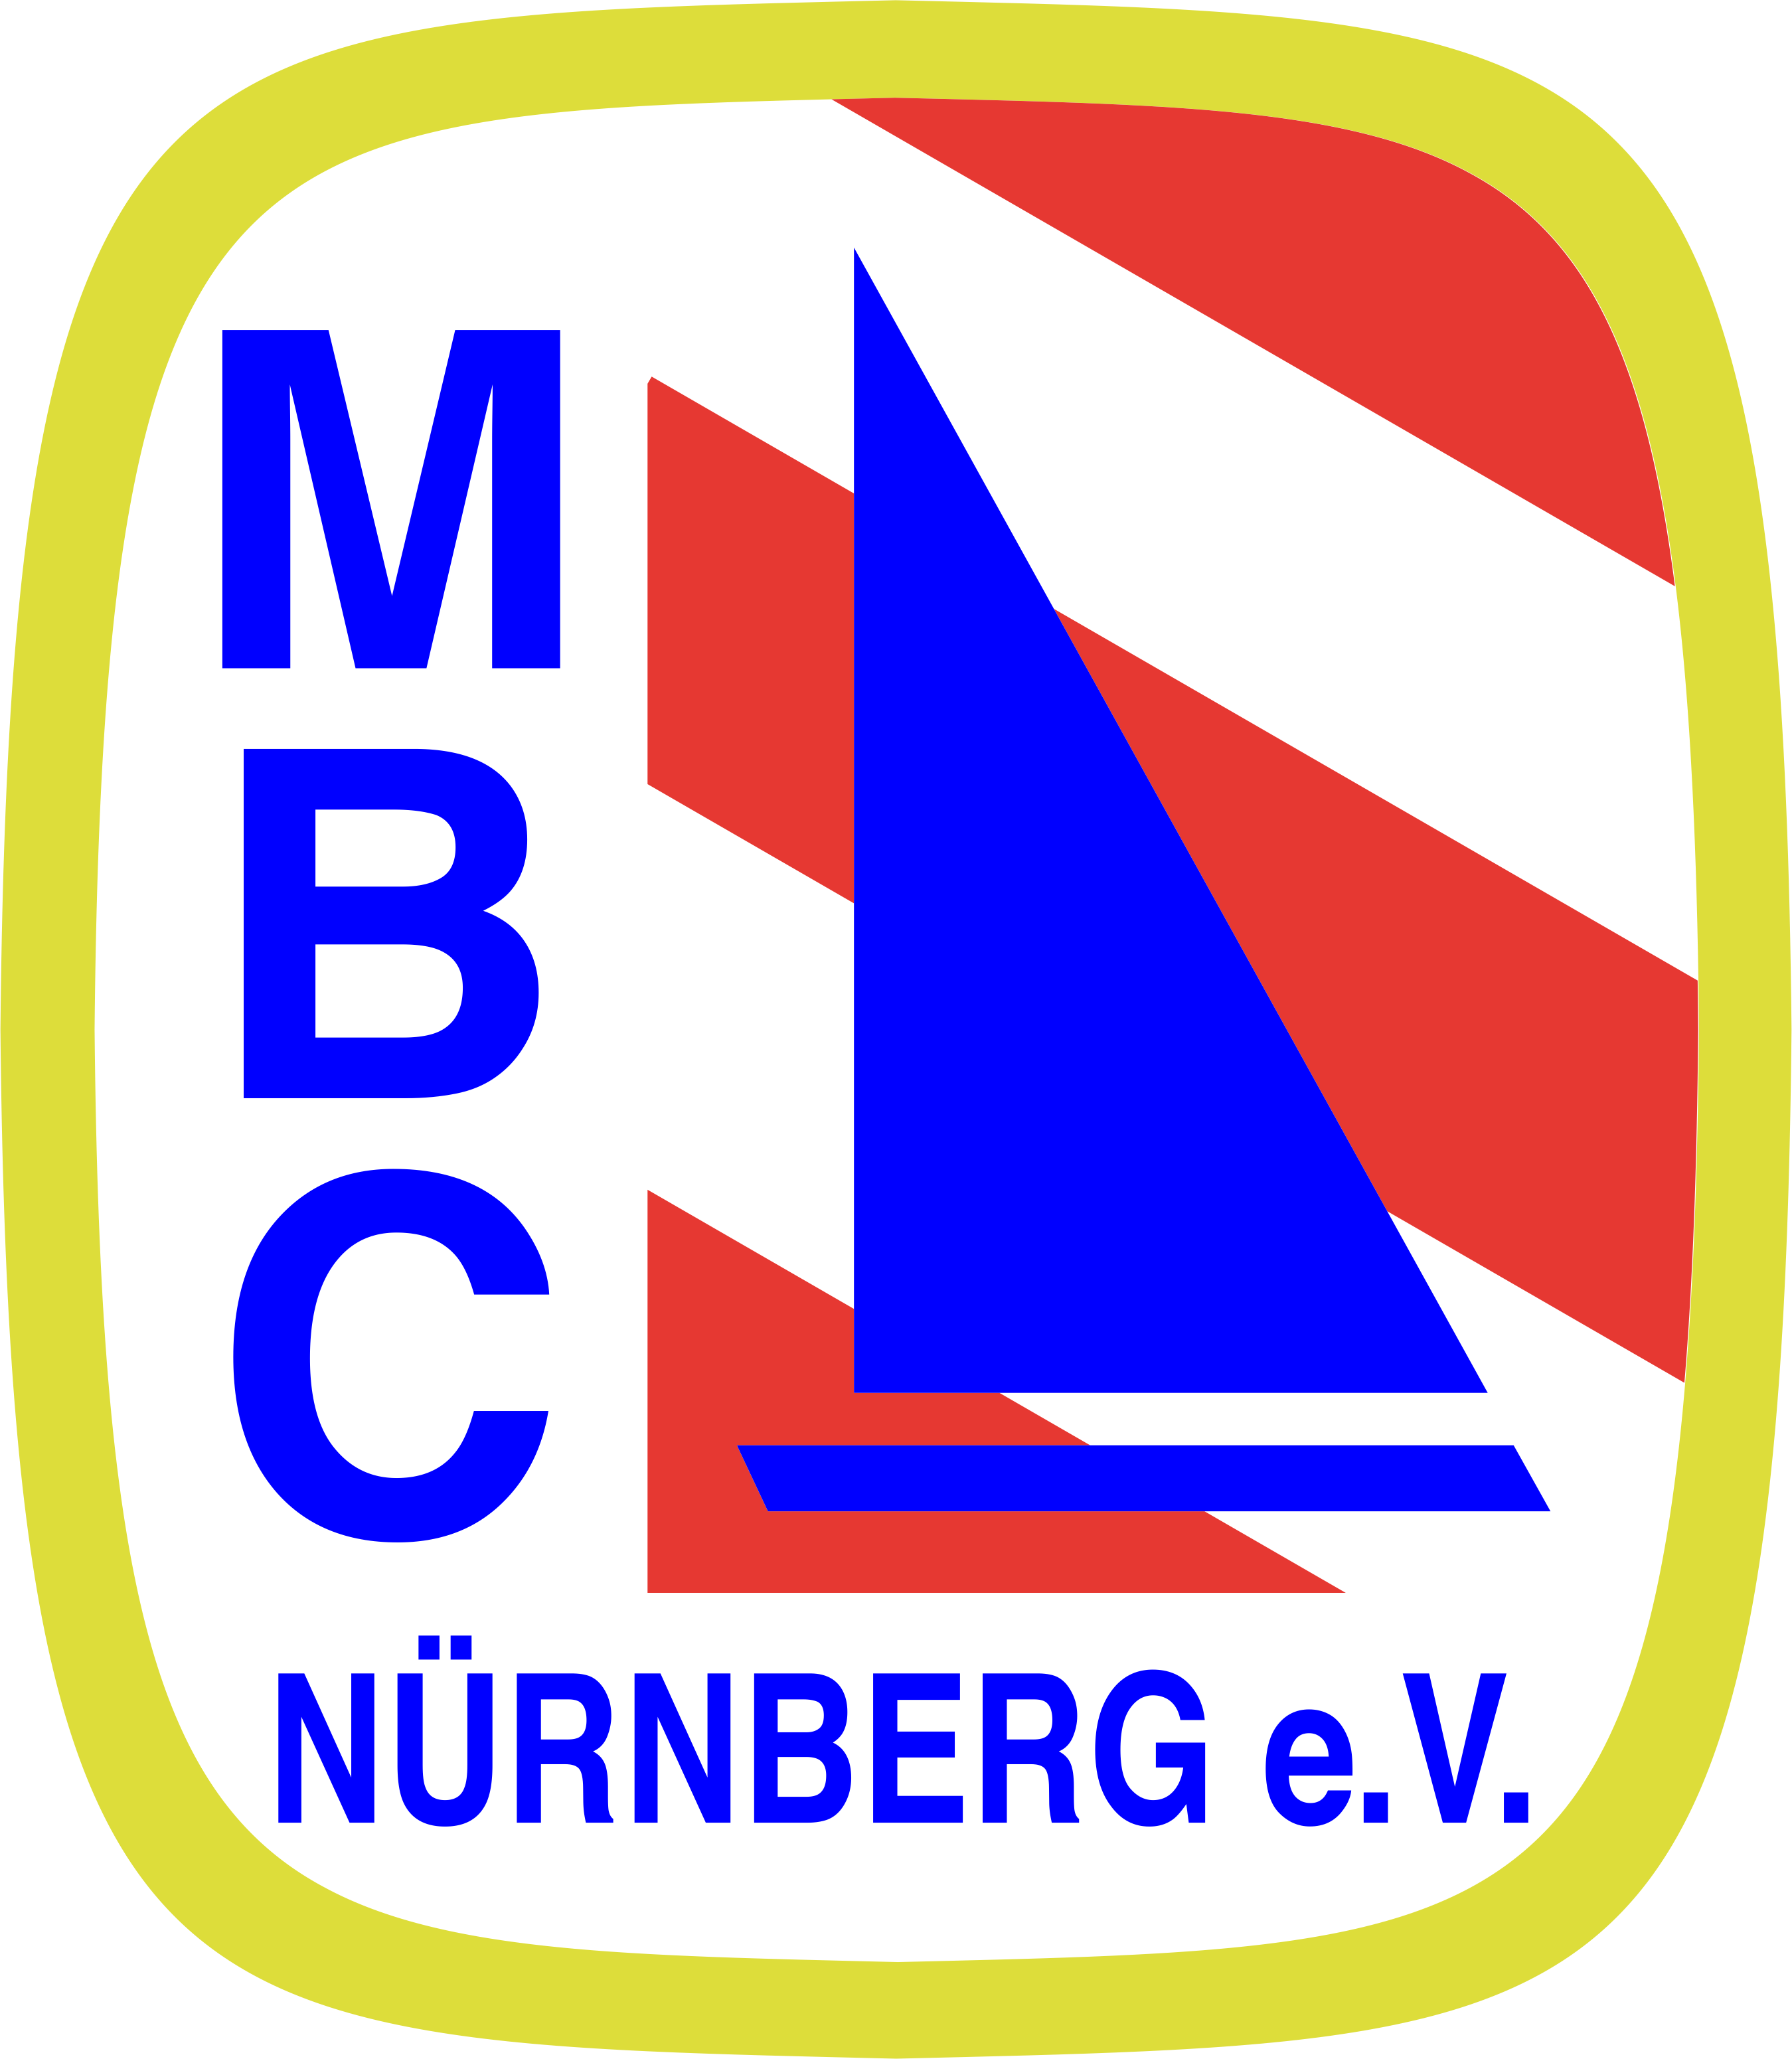 (c) Mbc-nbg.de